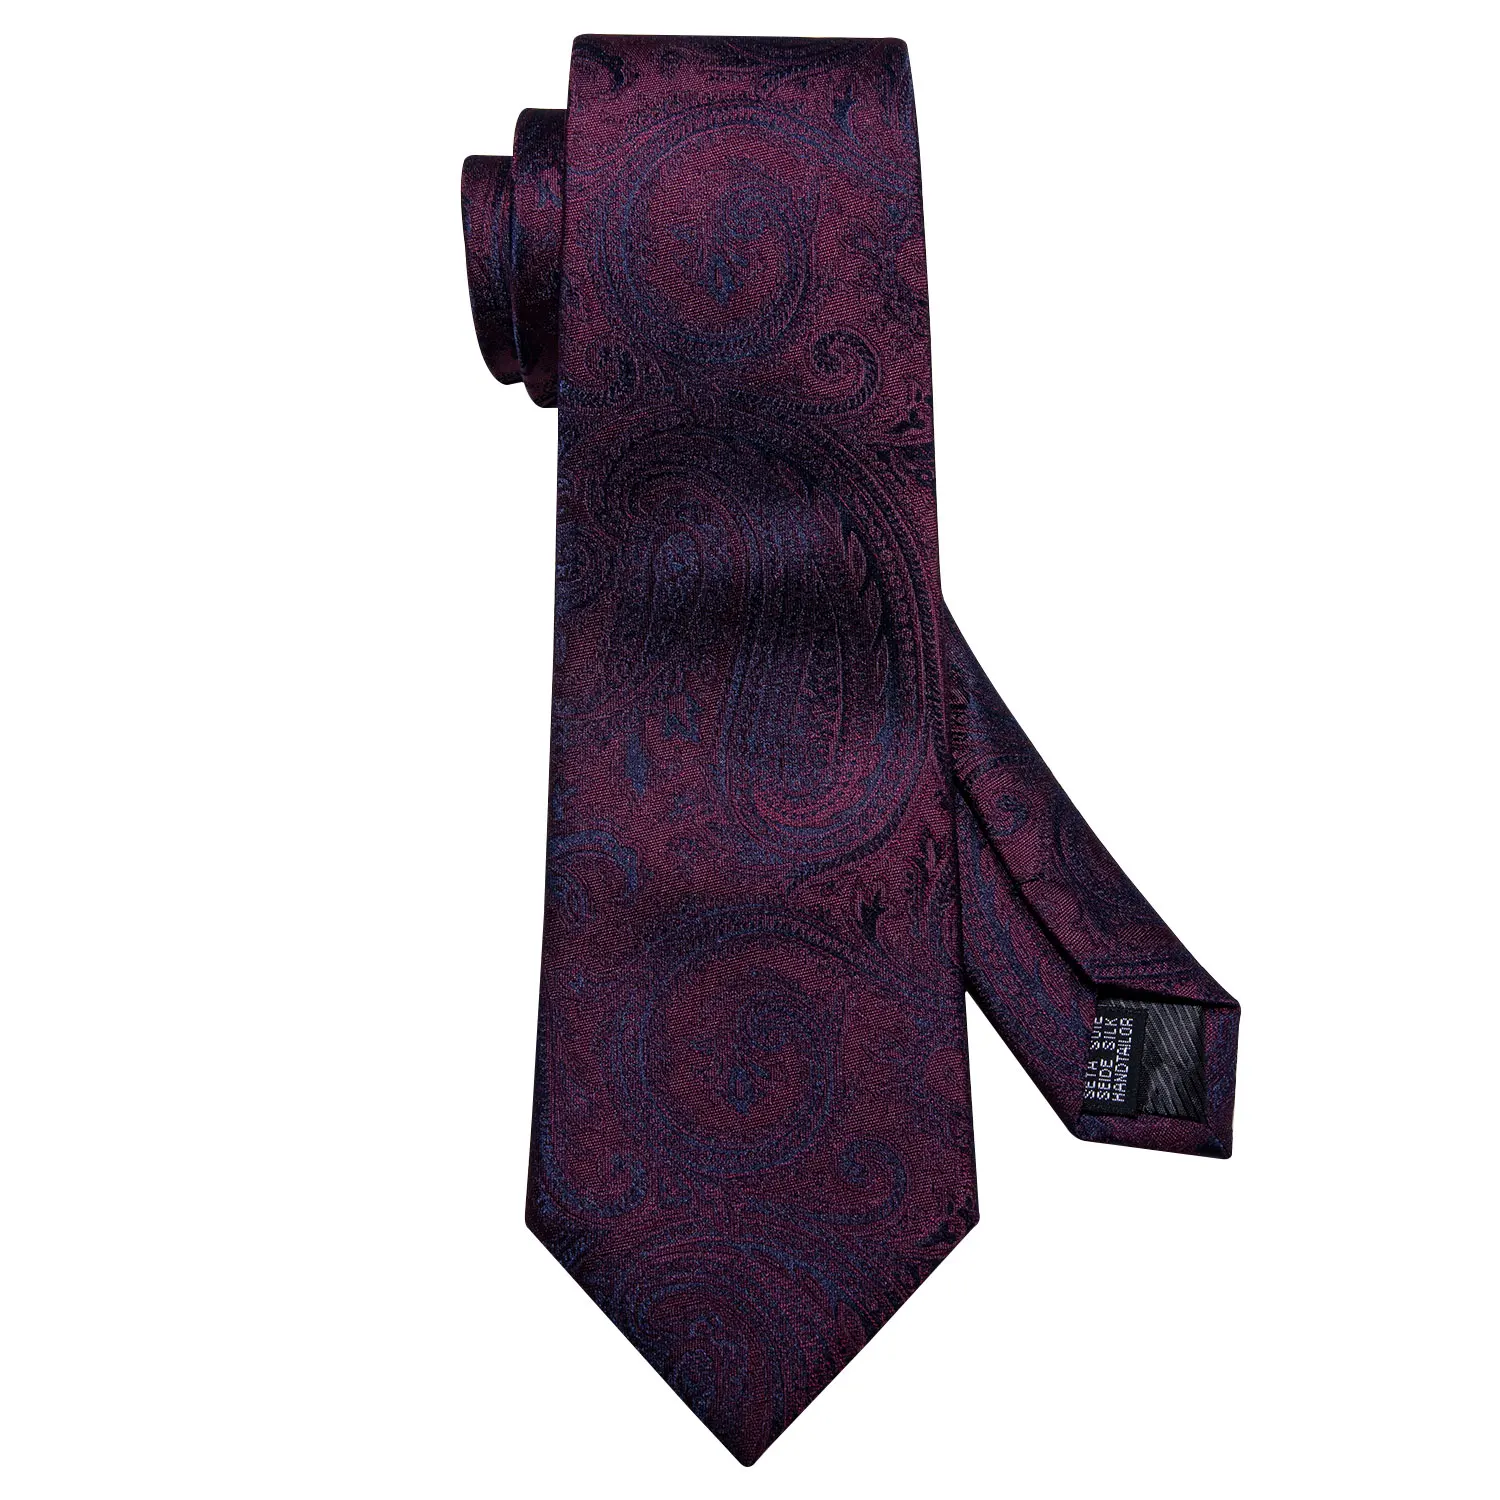 Barry. Wang мужской галстук темно-красный галстук Шелковый тканый галстук на шею с узором пейсли темно-синие дизайнерские вечерние и свадебные FA-5160